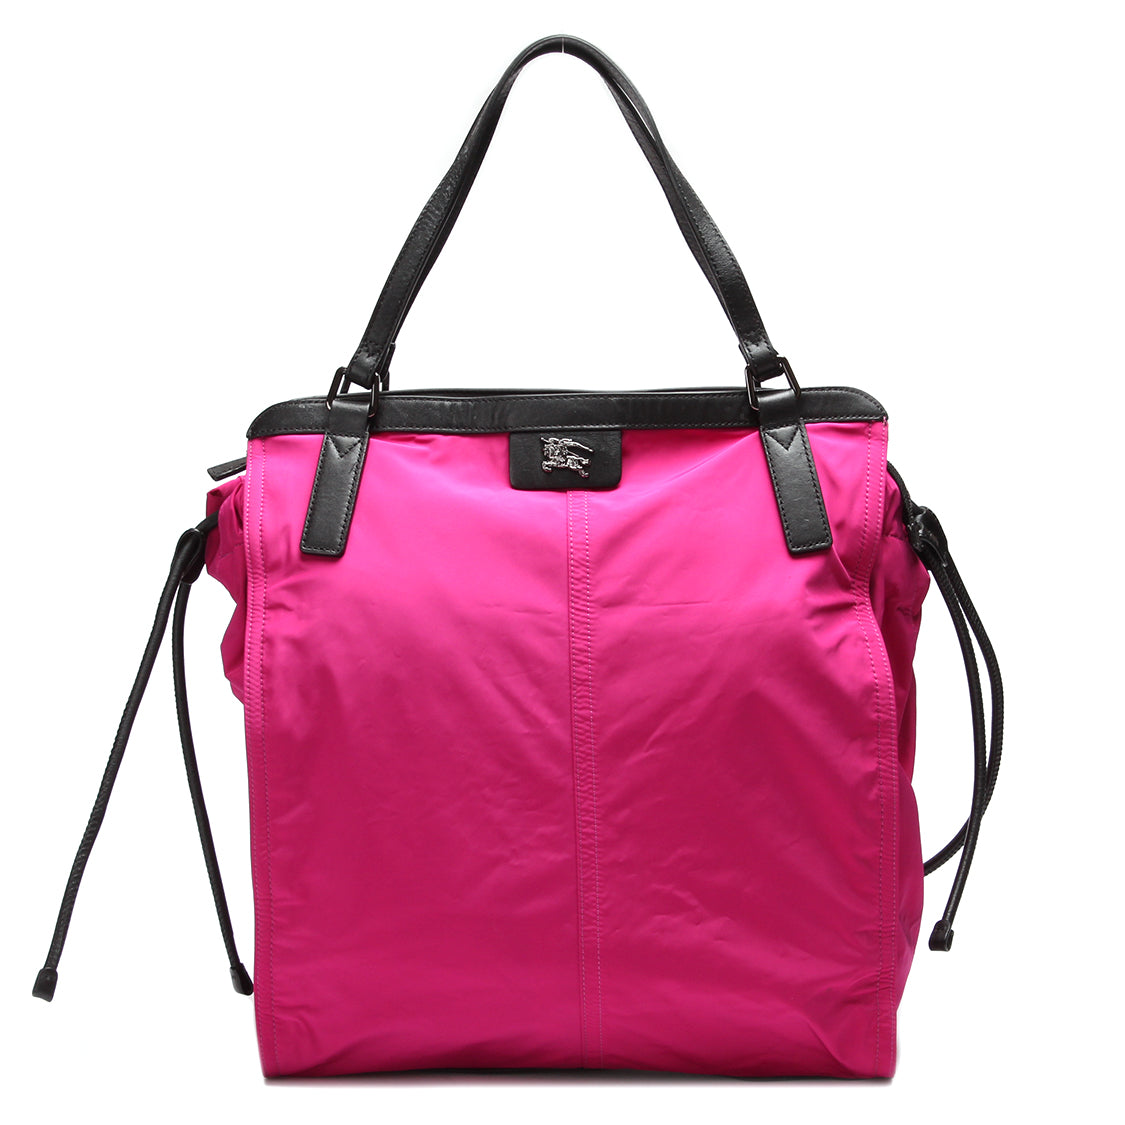 For det andet Hearty Skære af En verden af tasker til kvinder | Find alle farver | SPLISH